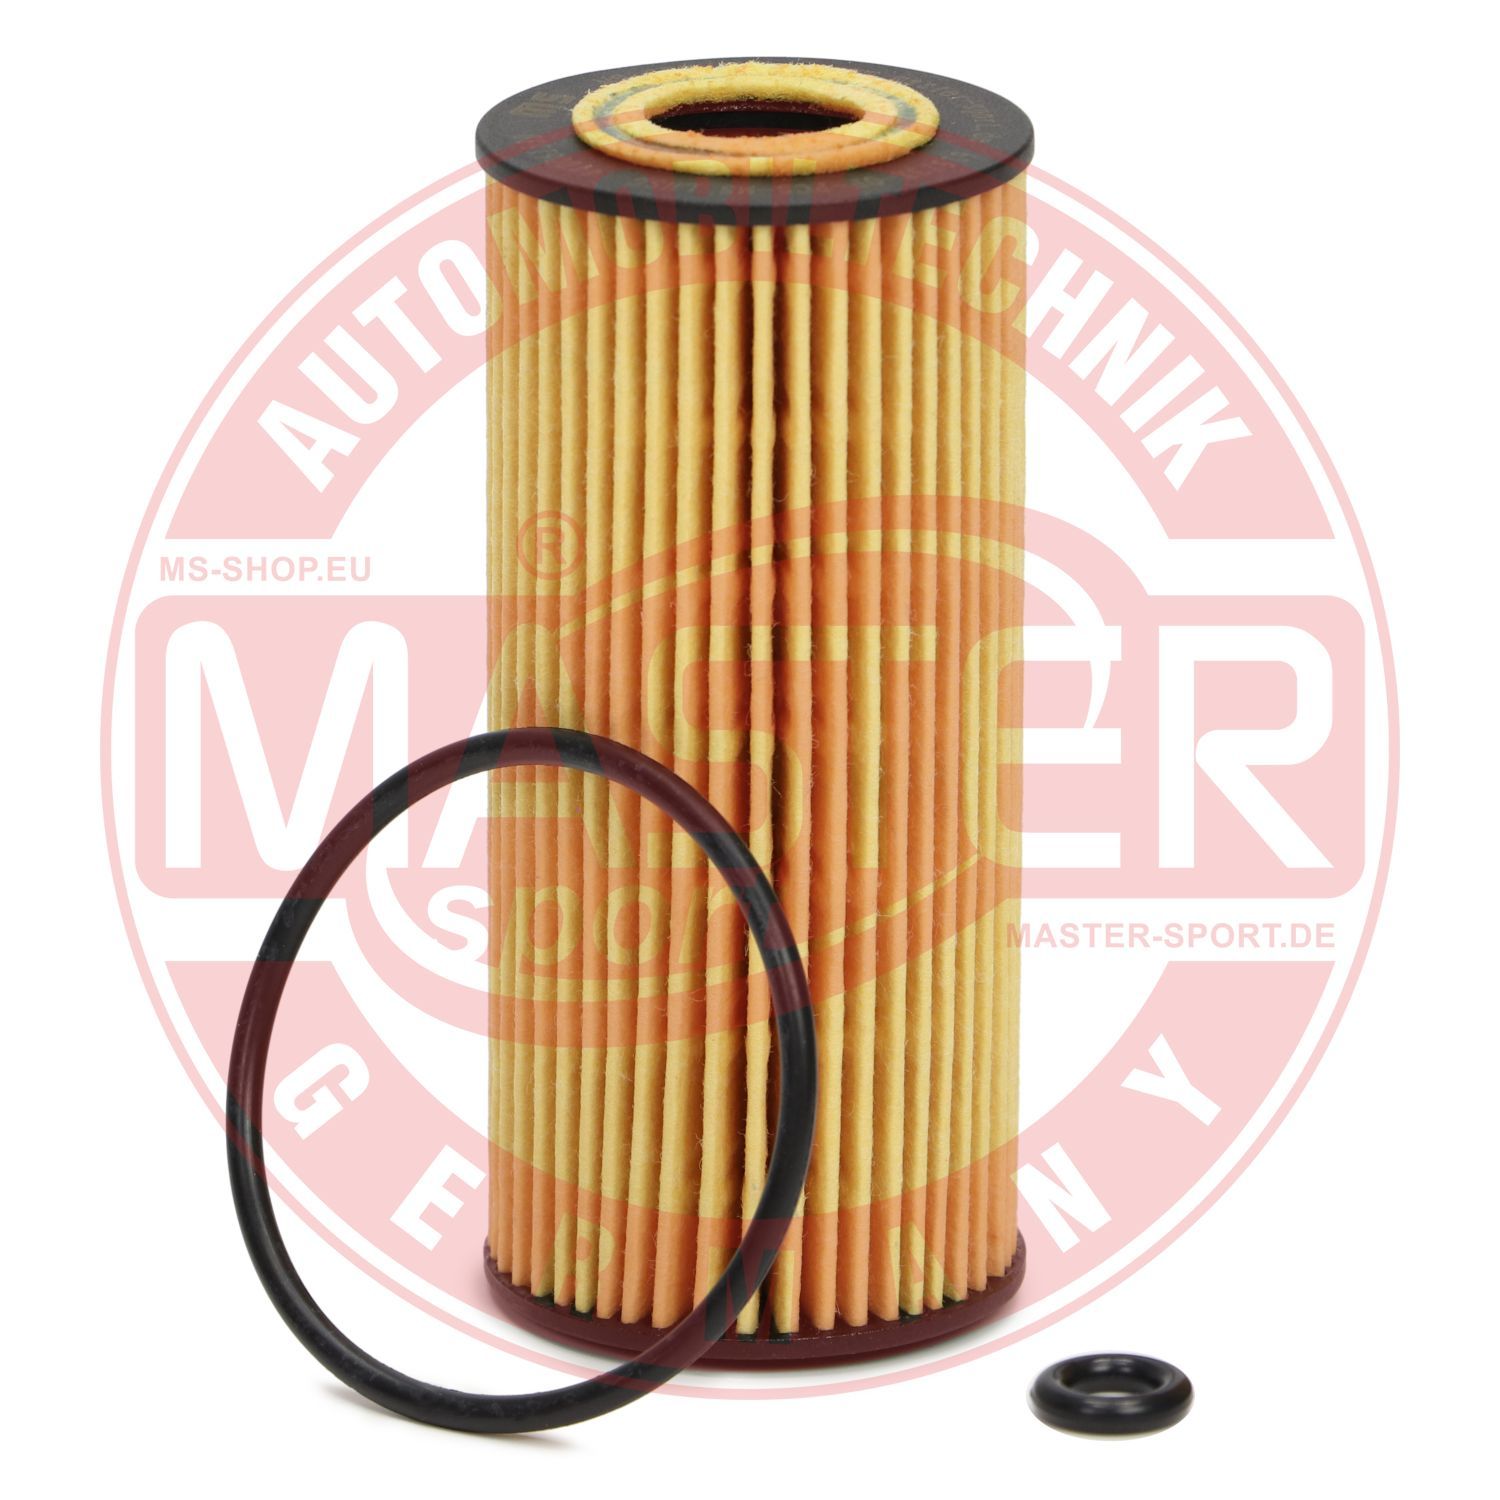 Obrázok Olejový filter MASTER-SPORT GERMANY  6153XOFPCSMS